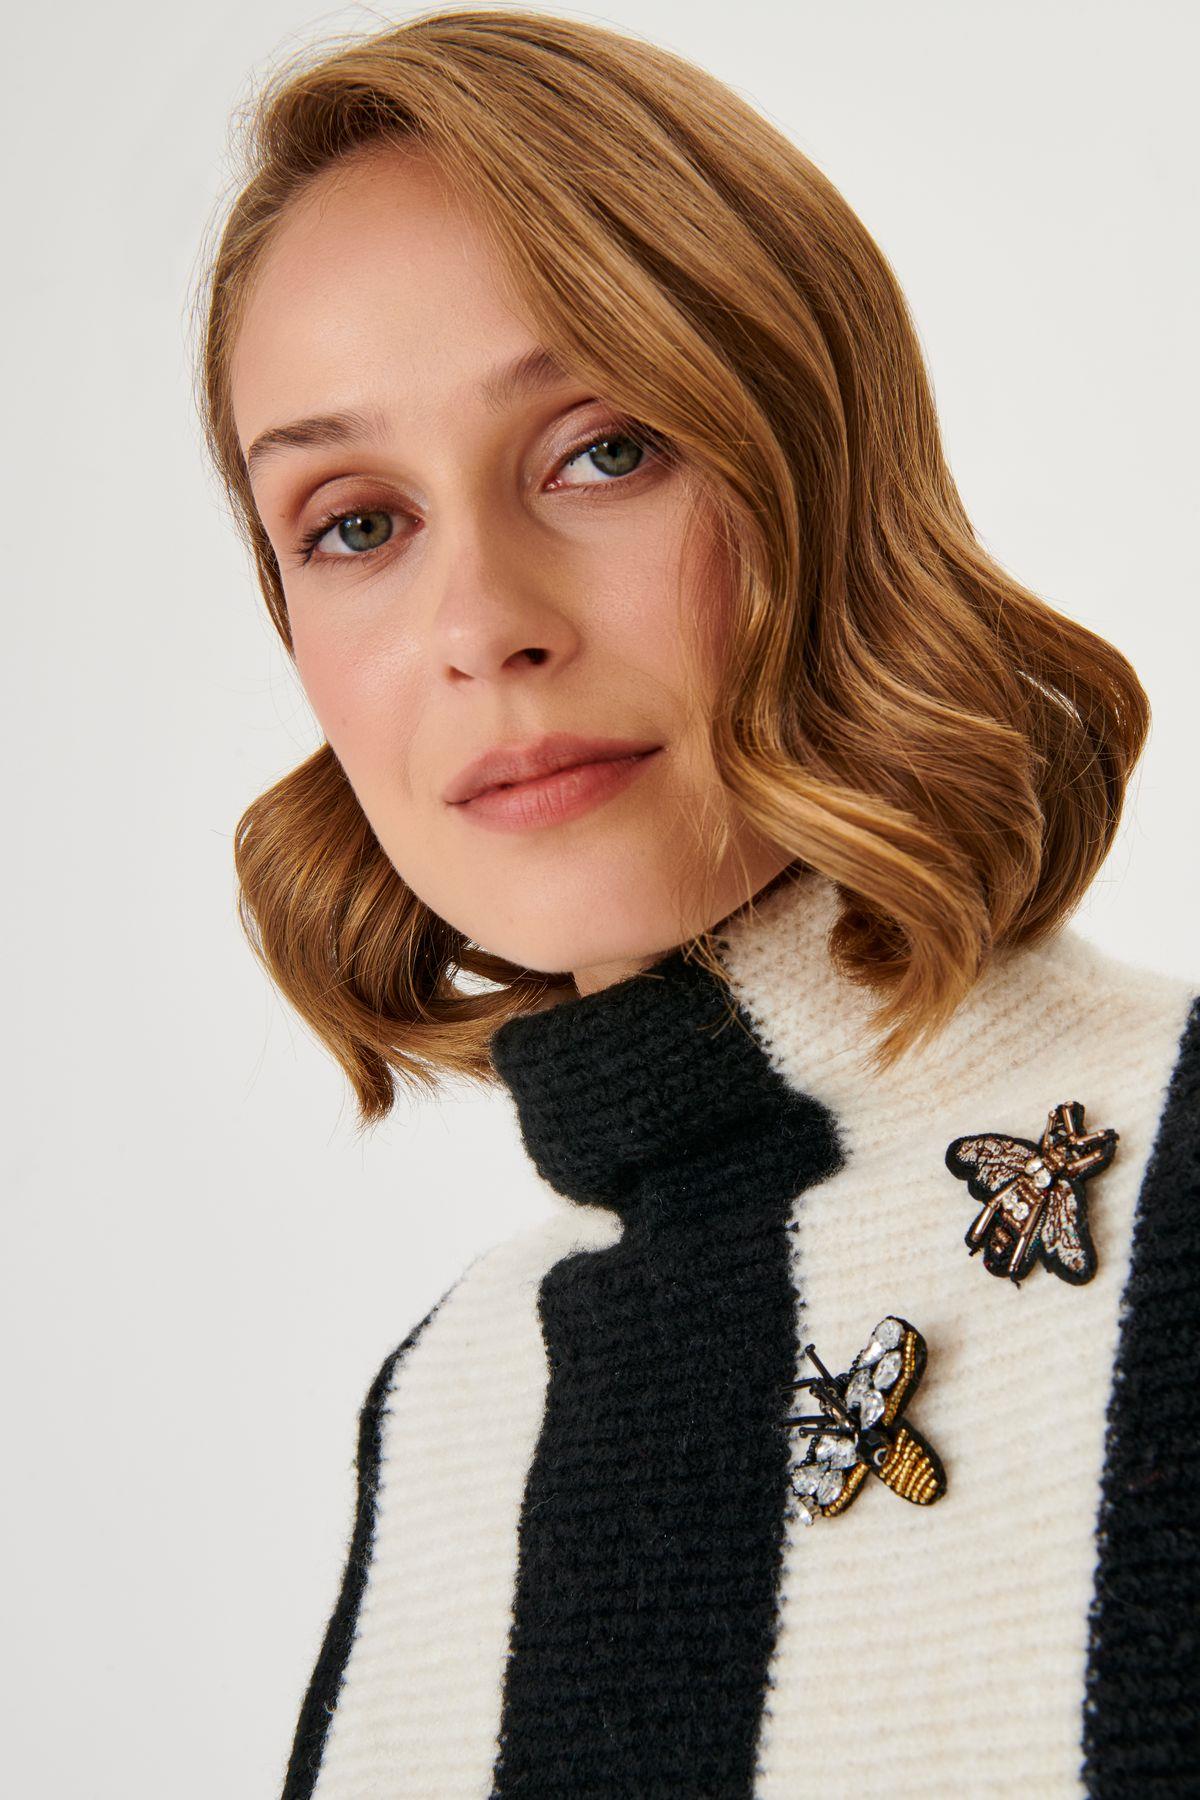 Brooch Detailed Striped Black & White Knitwear Sweater